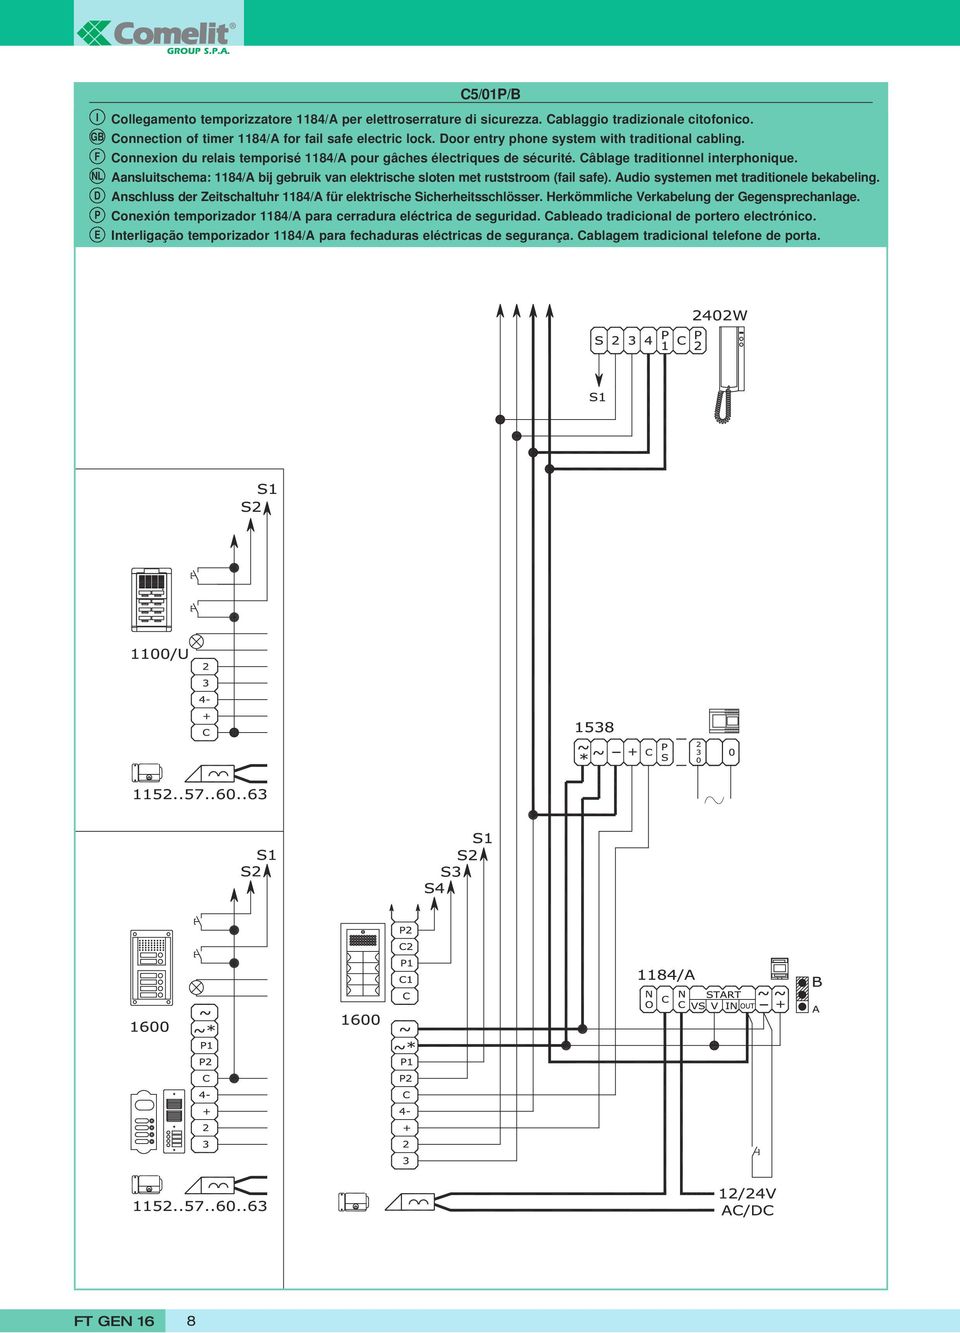 Aansluitschema: 1184/A bij gebruik van elektrische sloten met ruststroom (fail safe). Audio systemen met traditionele bekabeling.